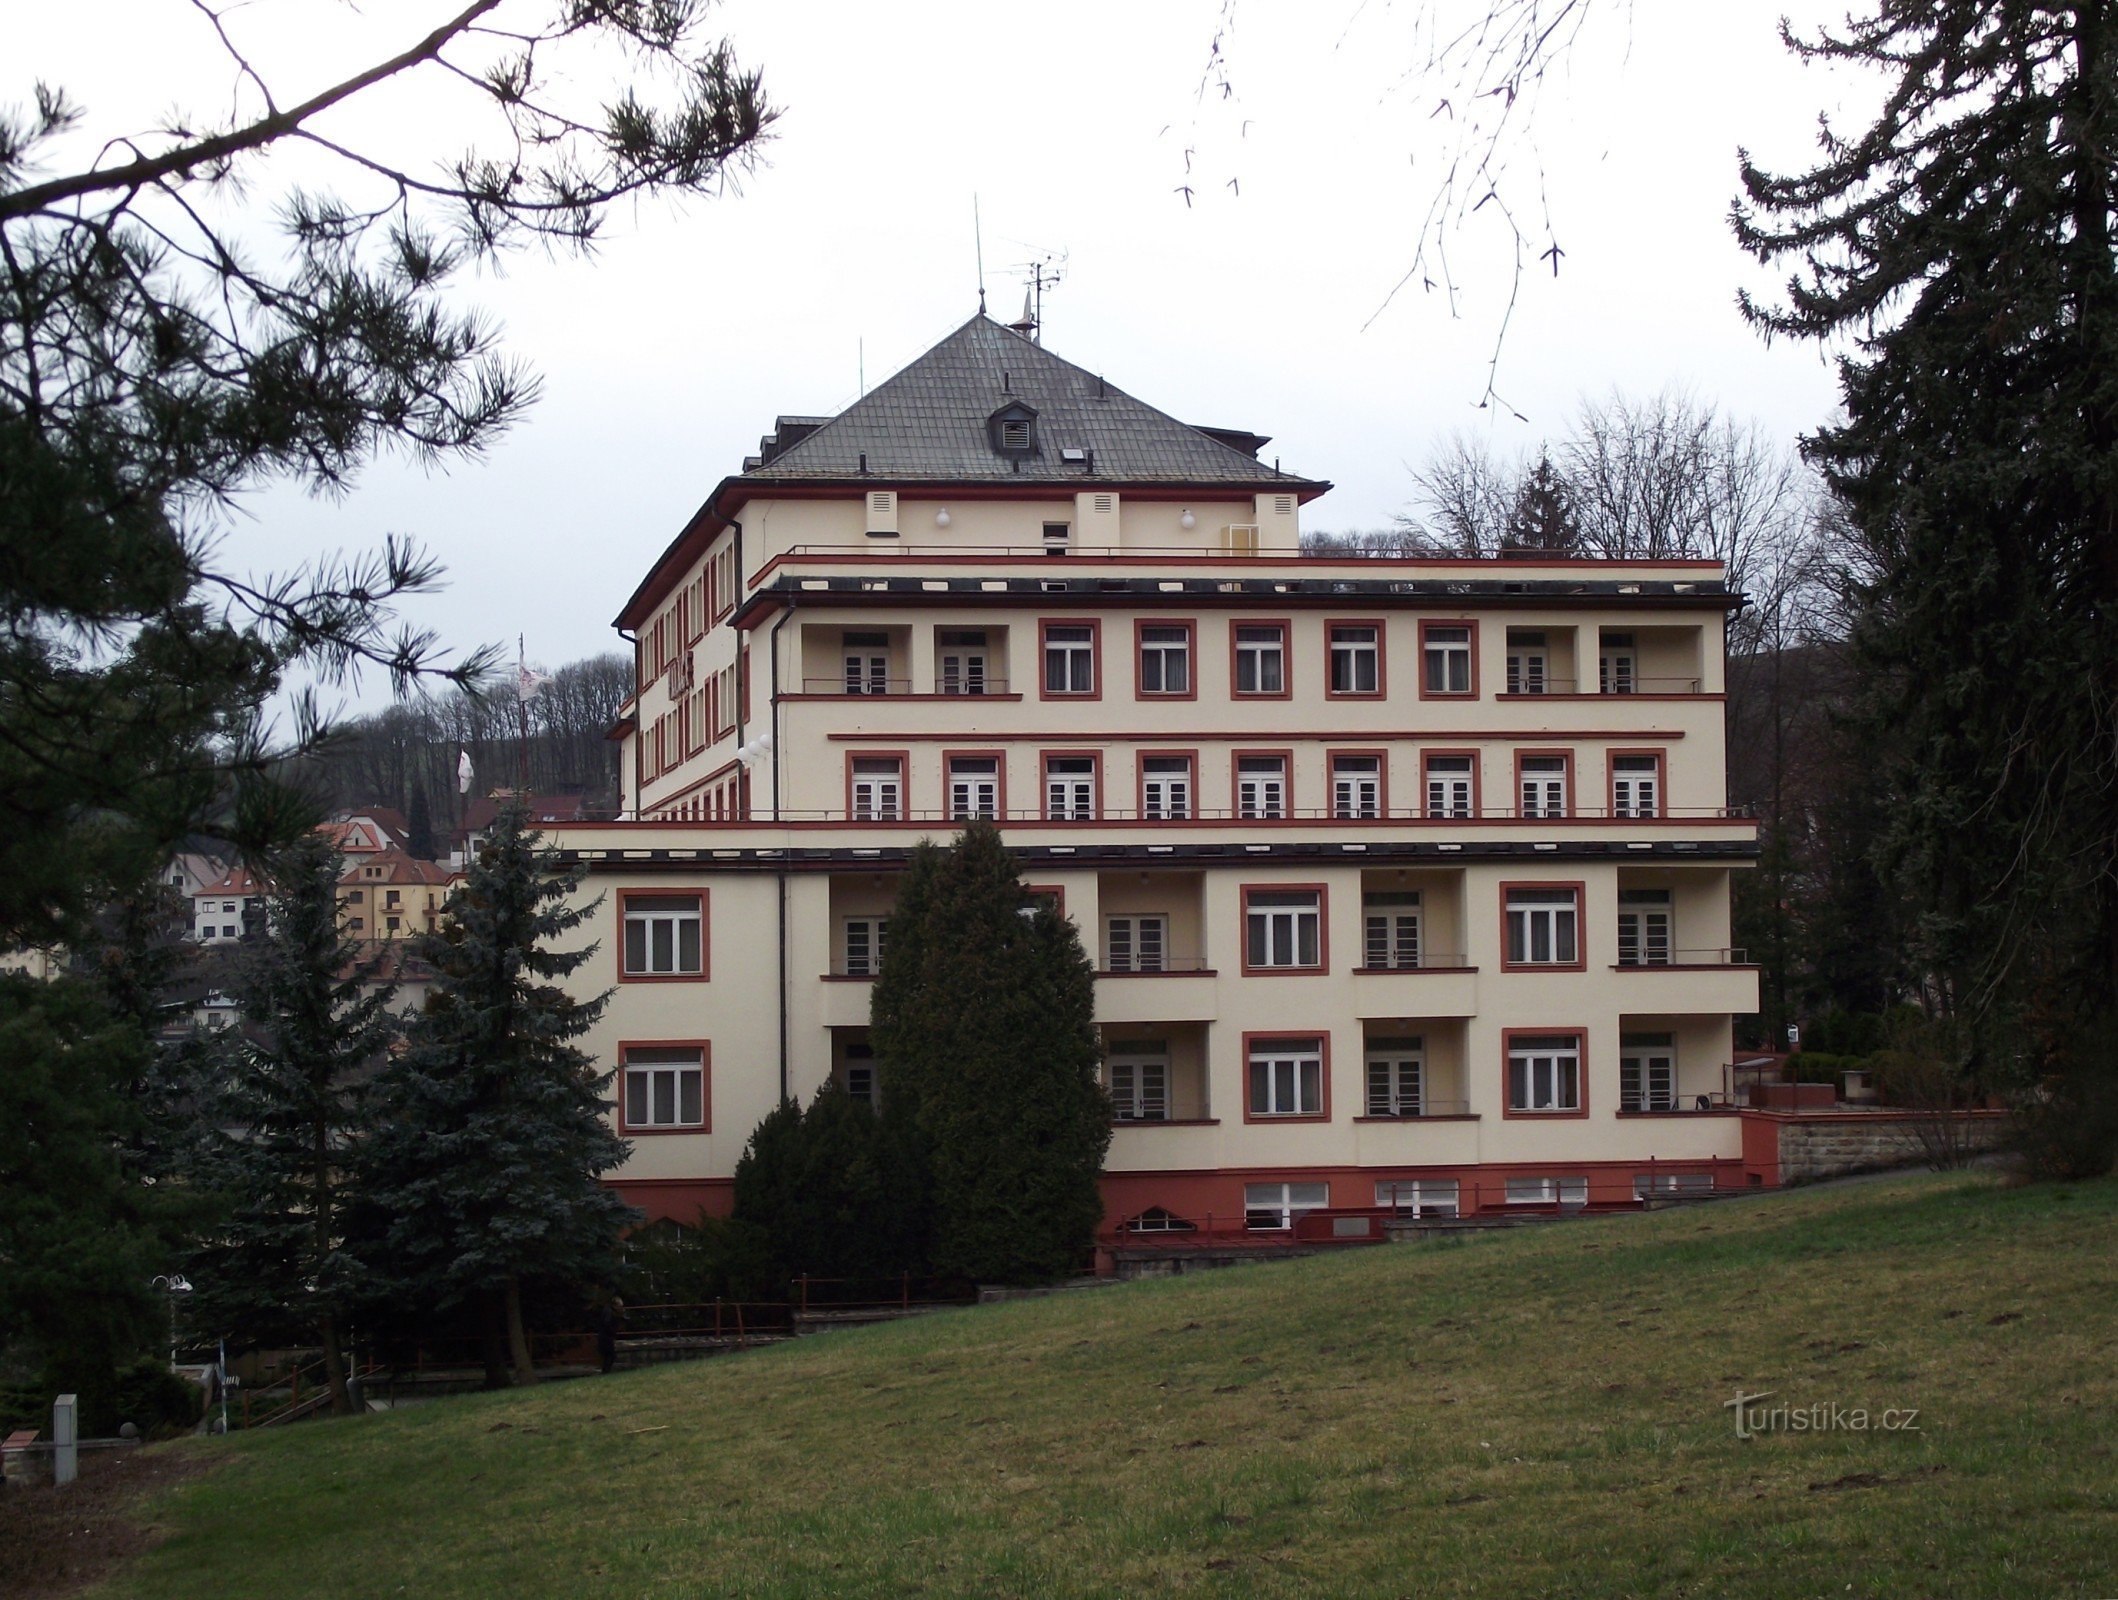 Luhačovice – Palace Hotel (Palace Hotel Drtílek)